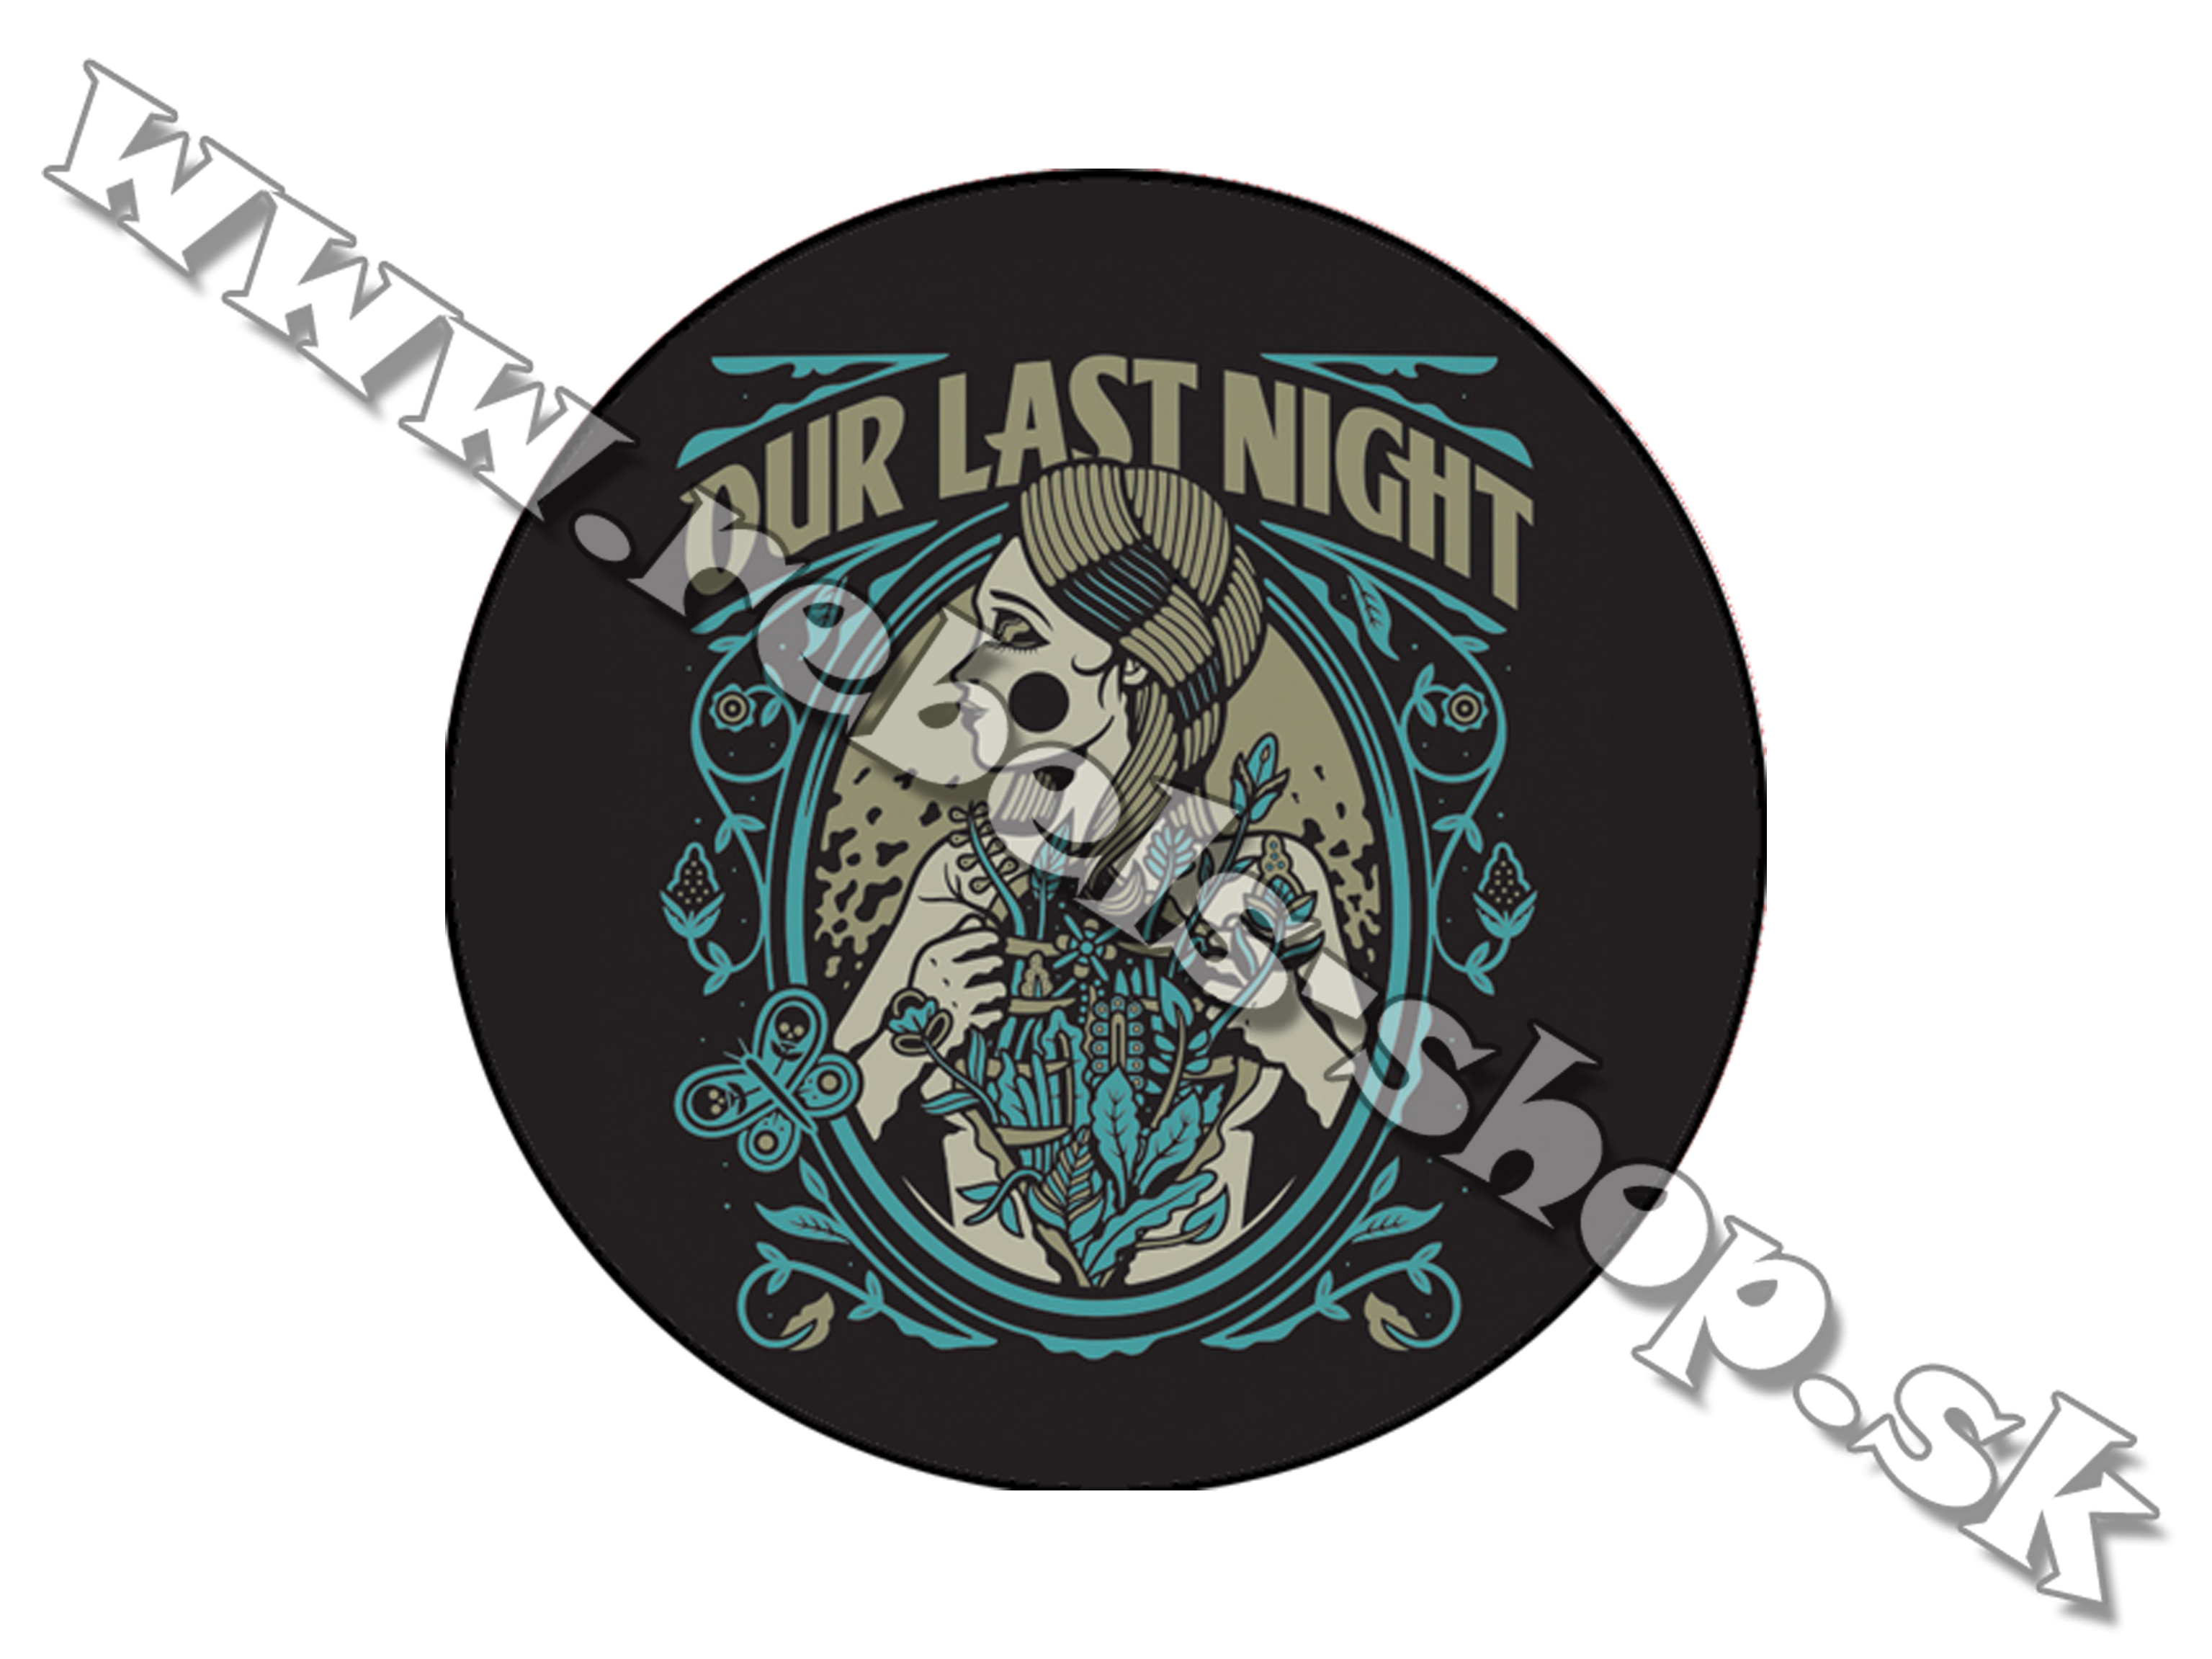 Odznak "Our Last Night"